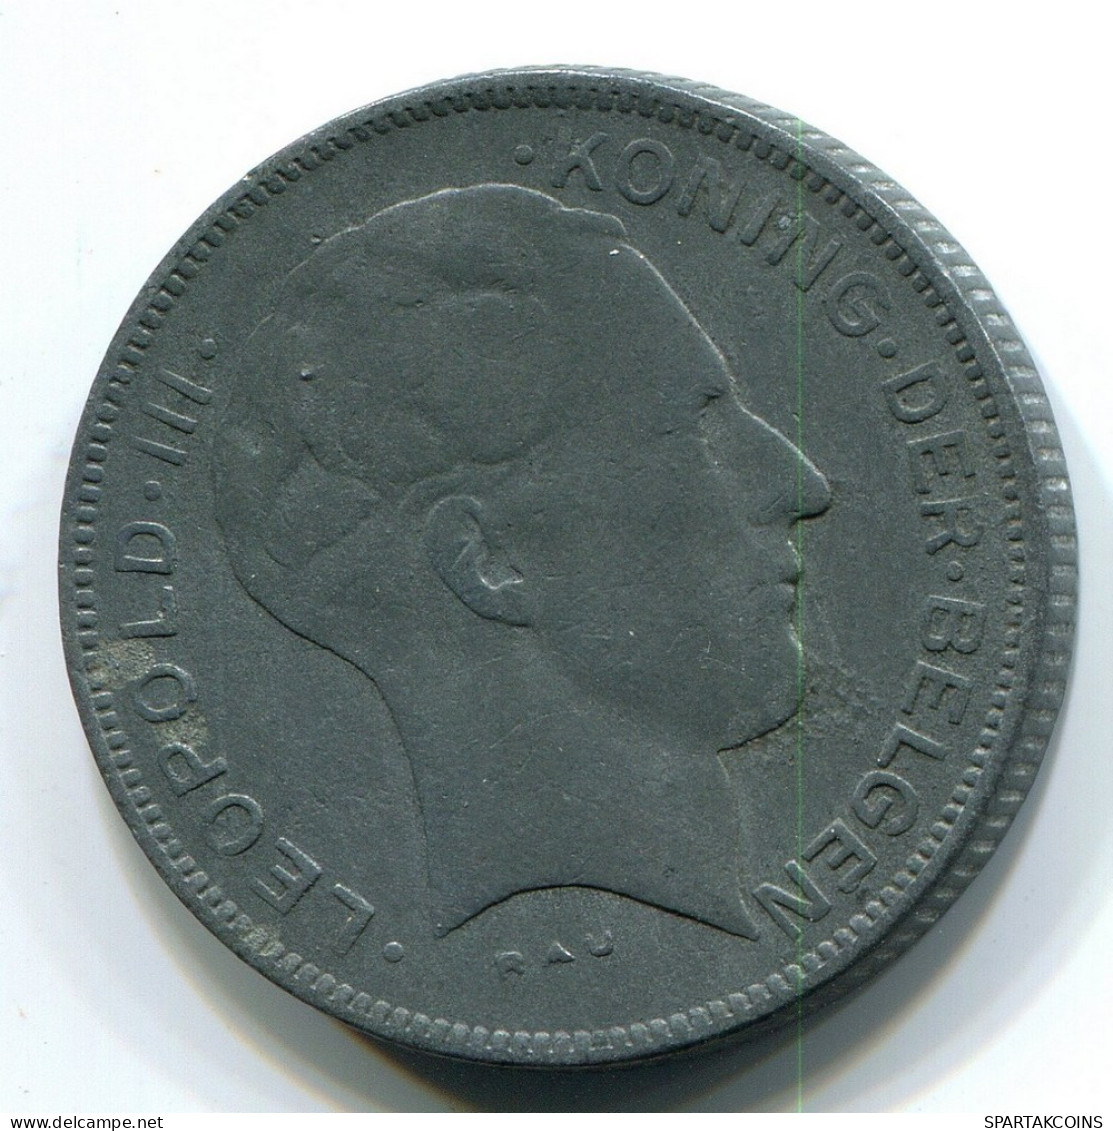 5 FRANCS 1941 DUTCH Text BELGIUM Coin #BB378.U.A - 5 Francs